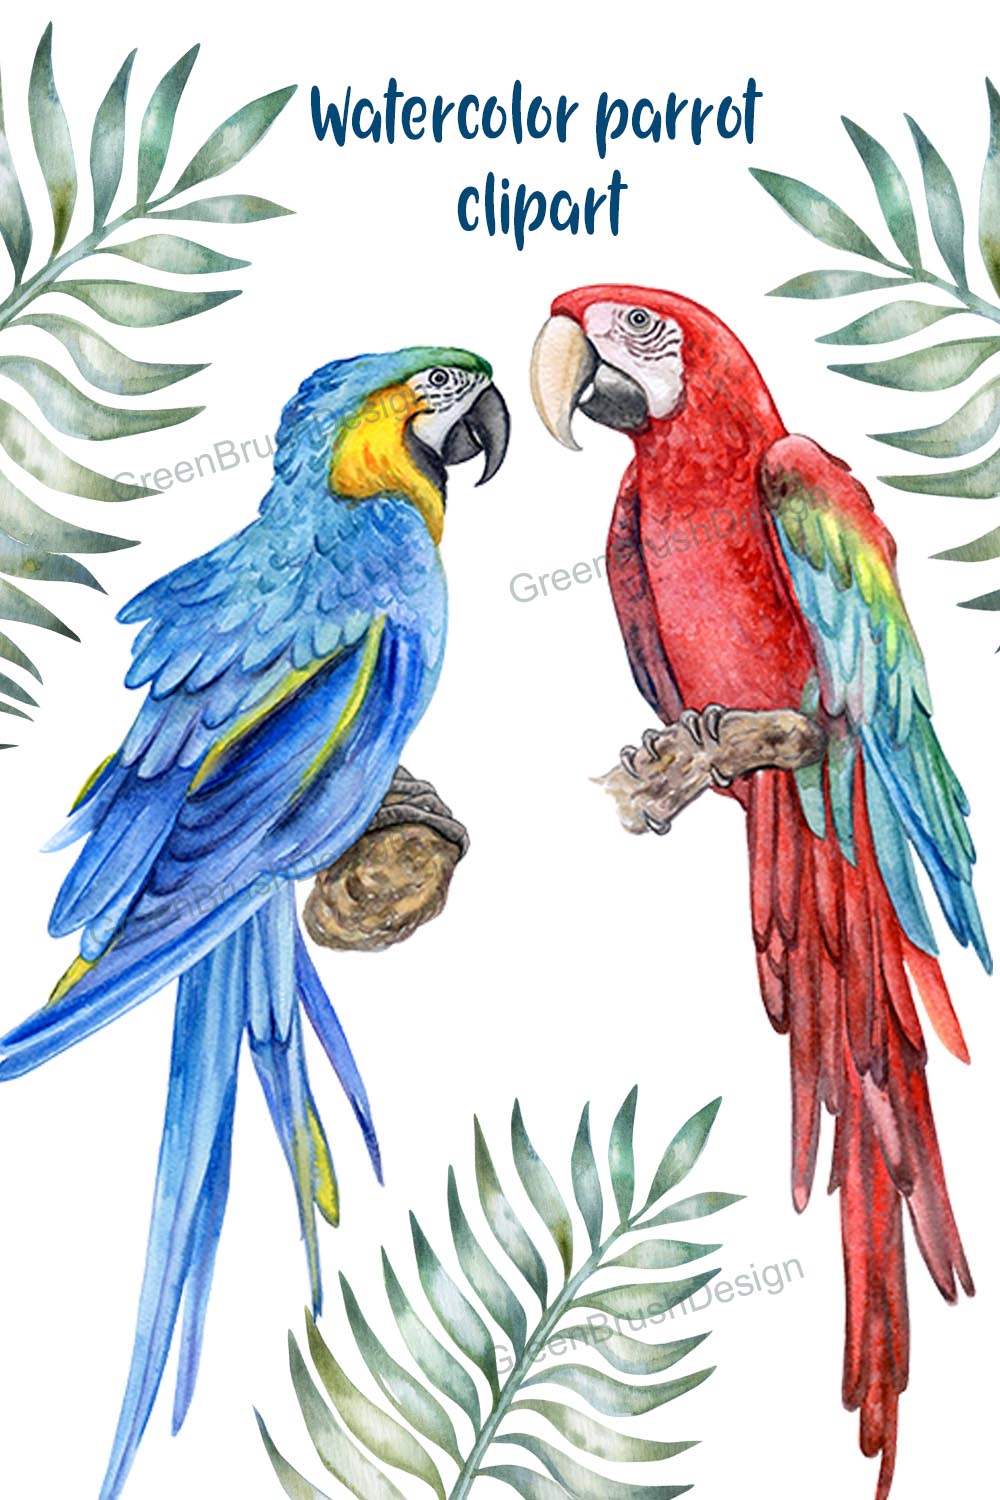 Watercolor Parrot Clipart pinterest image.